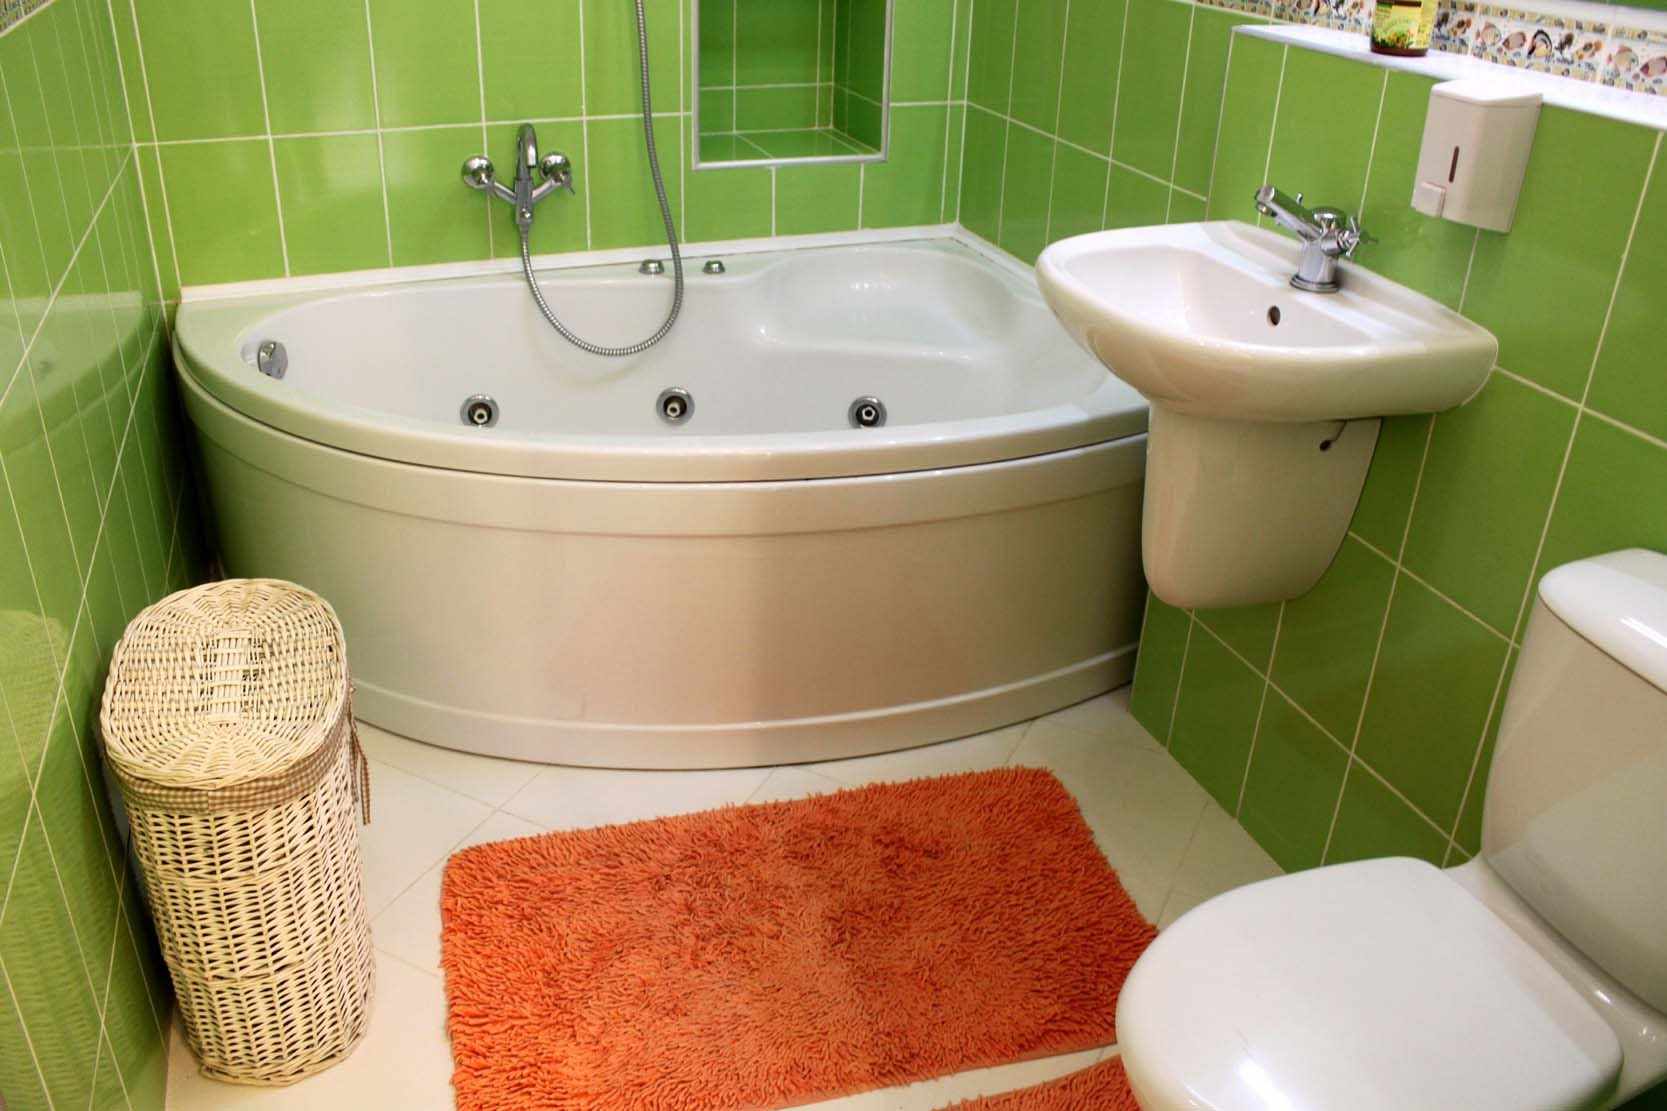 An example of a light bathroom decor with a corner bath